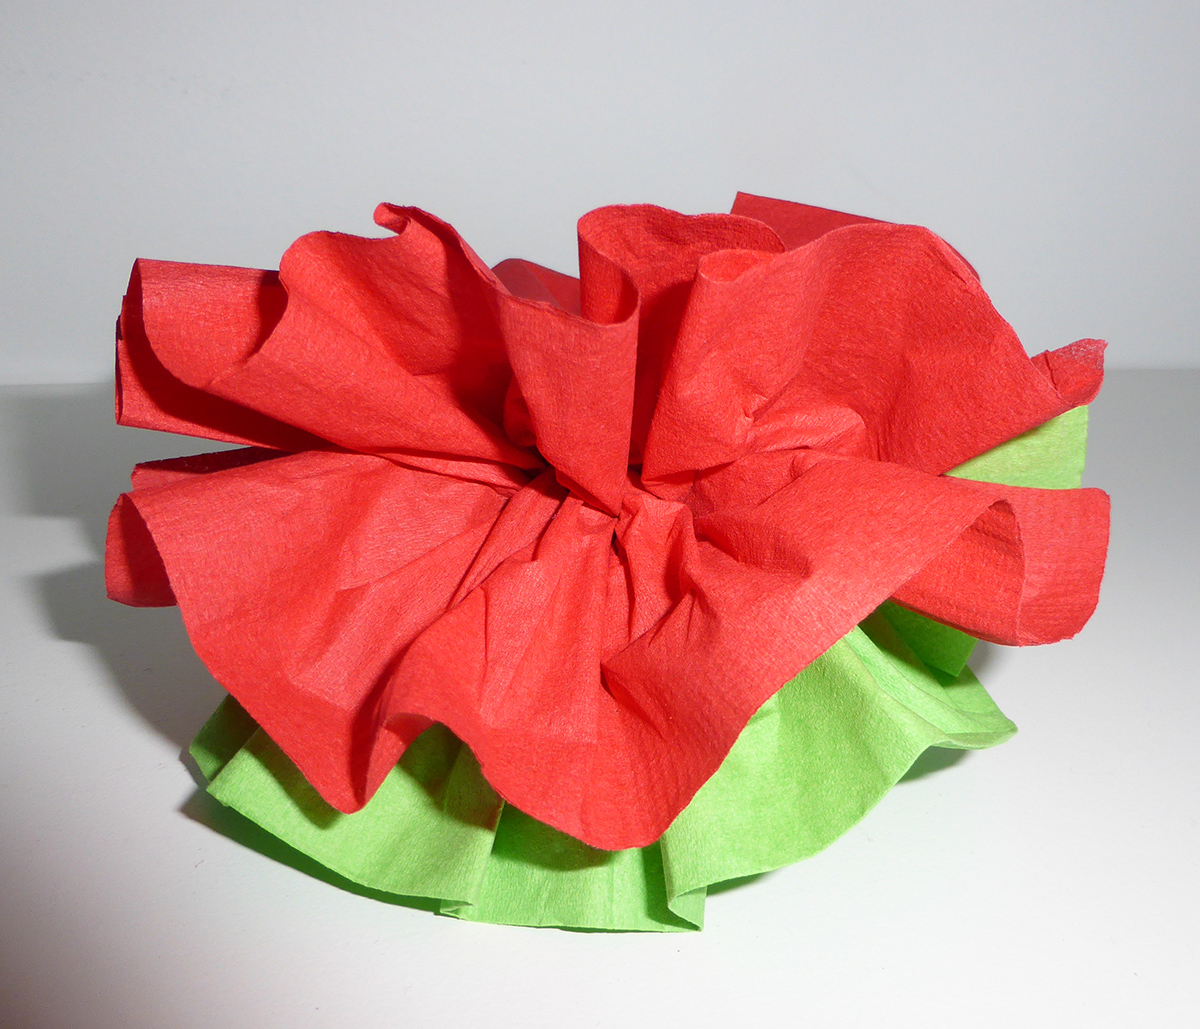 Pliage de serviette de table en forme de fleur de pivoine, réaliser une pivoine avec une ...